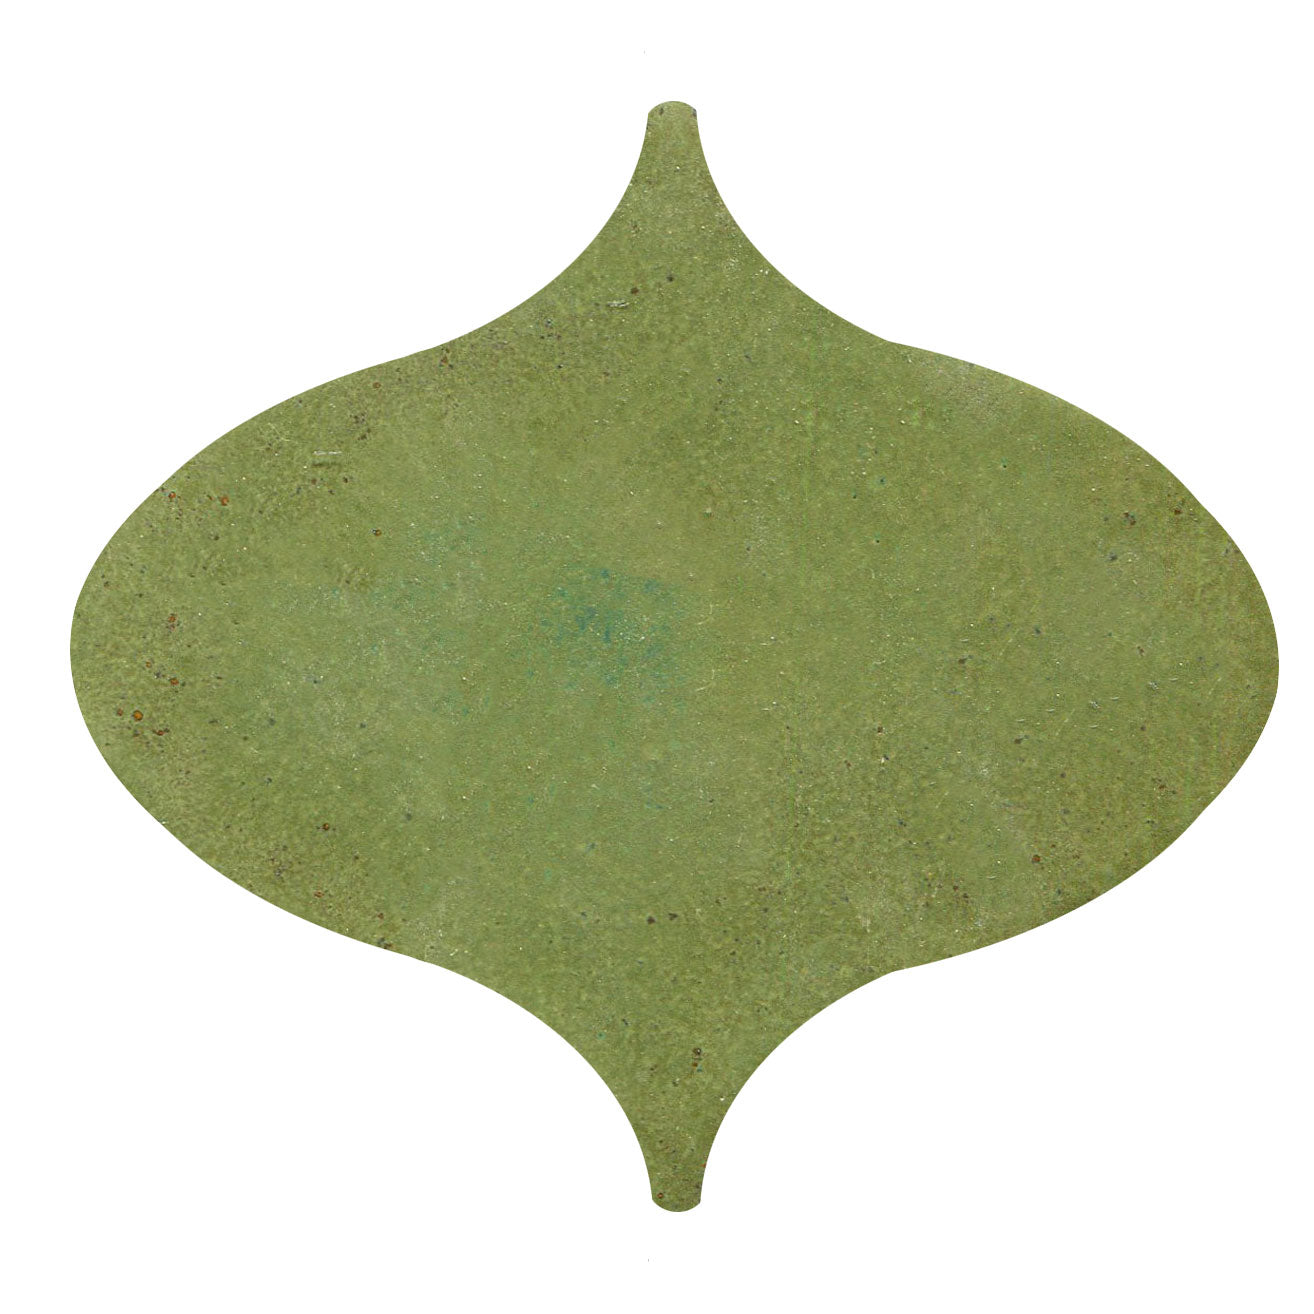 Persian shape tile Pesto